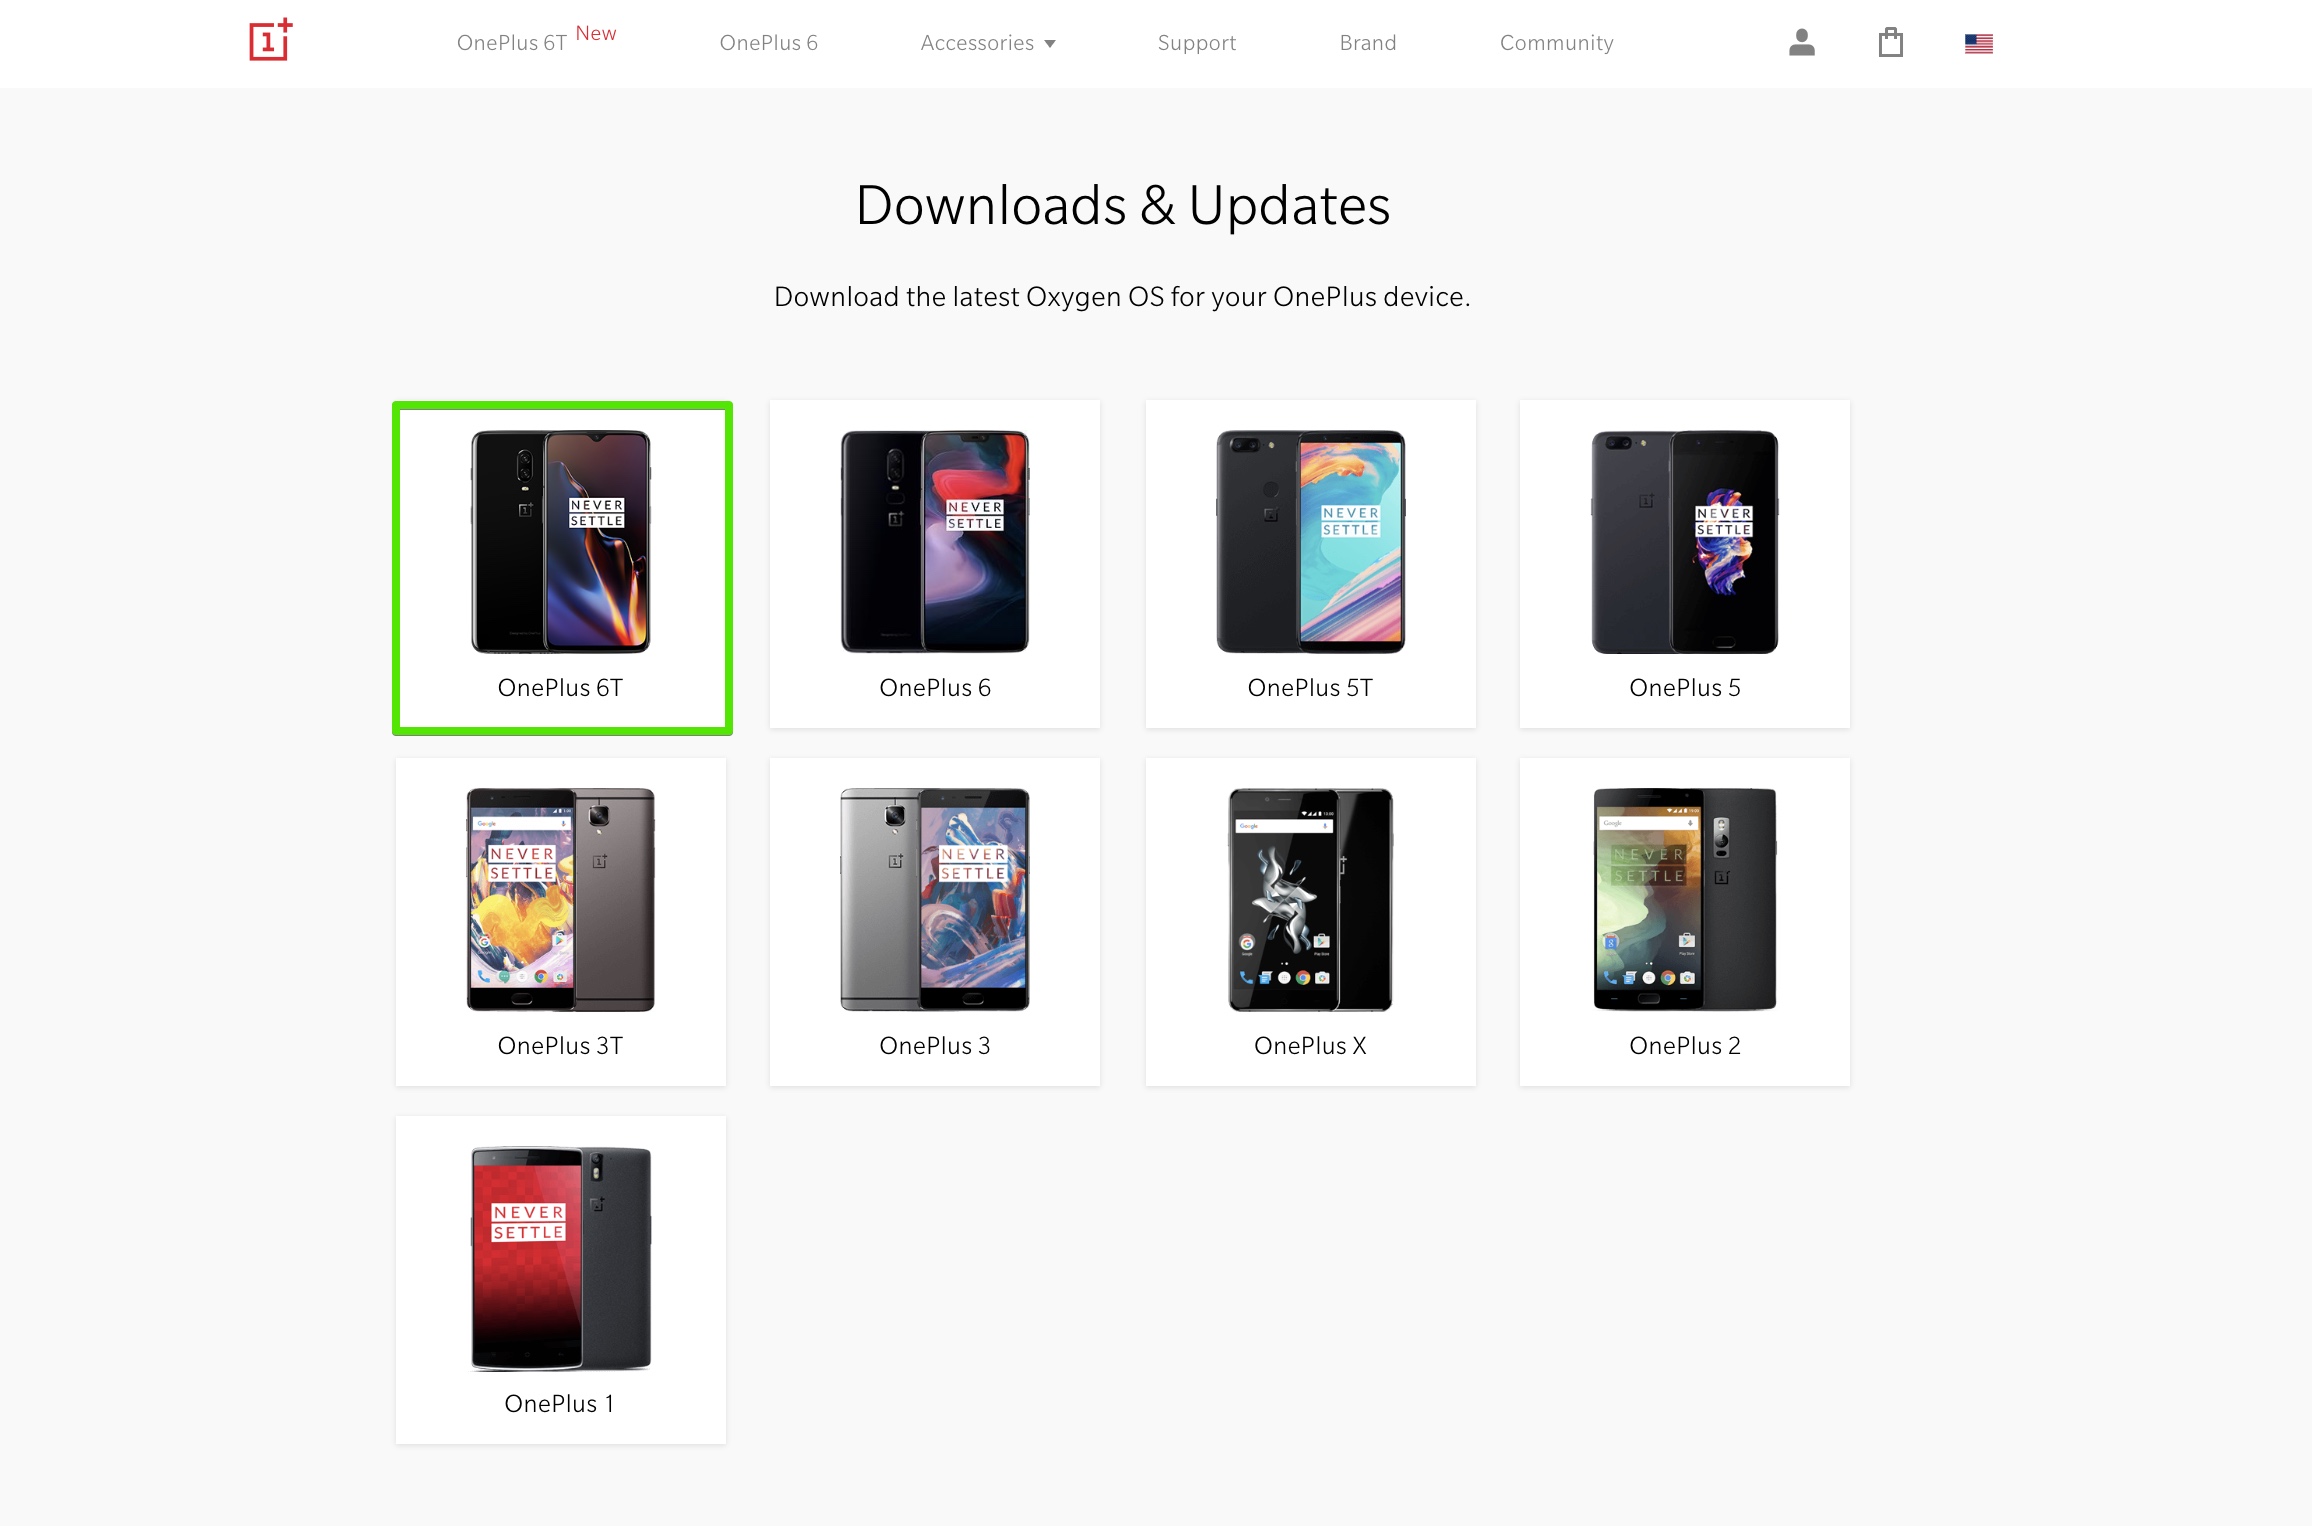 OnePlusの公式ページのソフトウェアでOnePlus 6Tを選択。